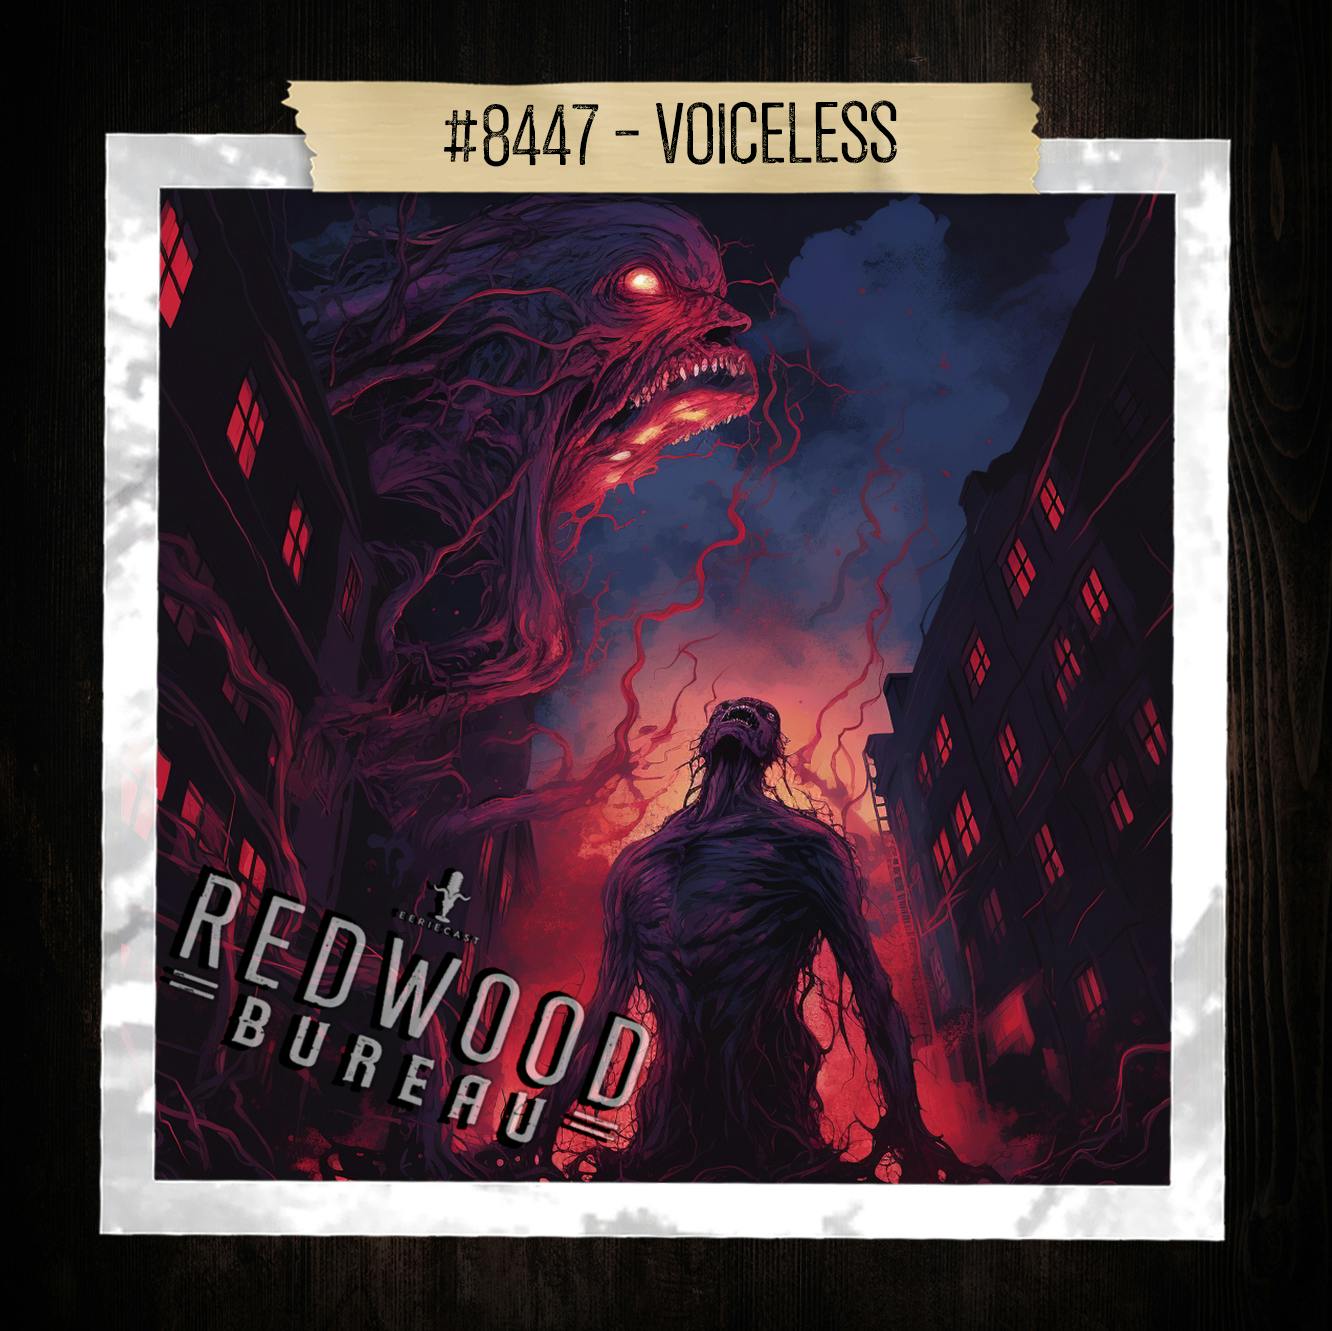 "VOICELESS" - Redwood Bureau Phenomenon #8447